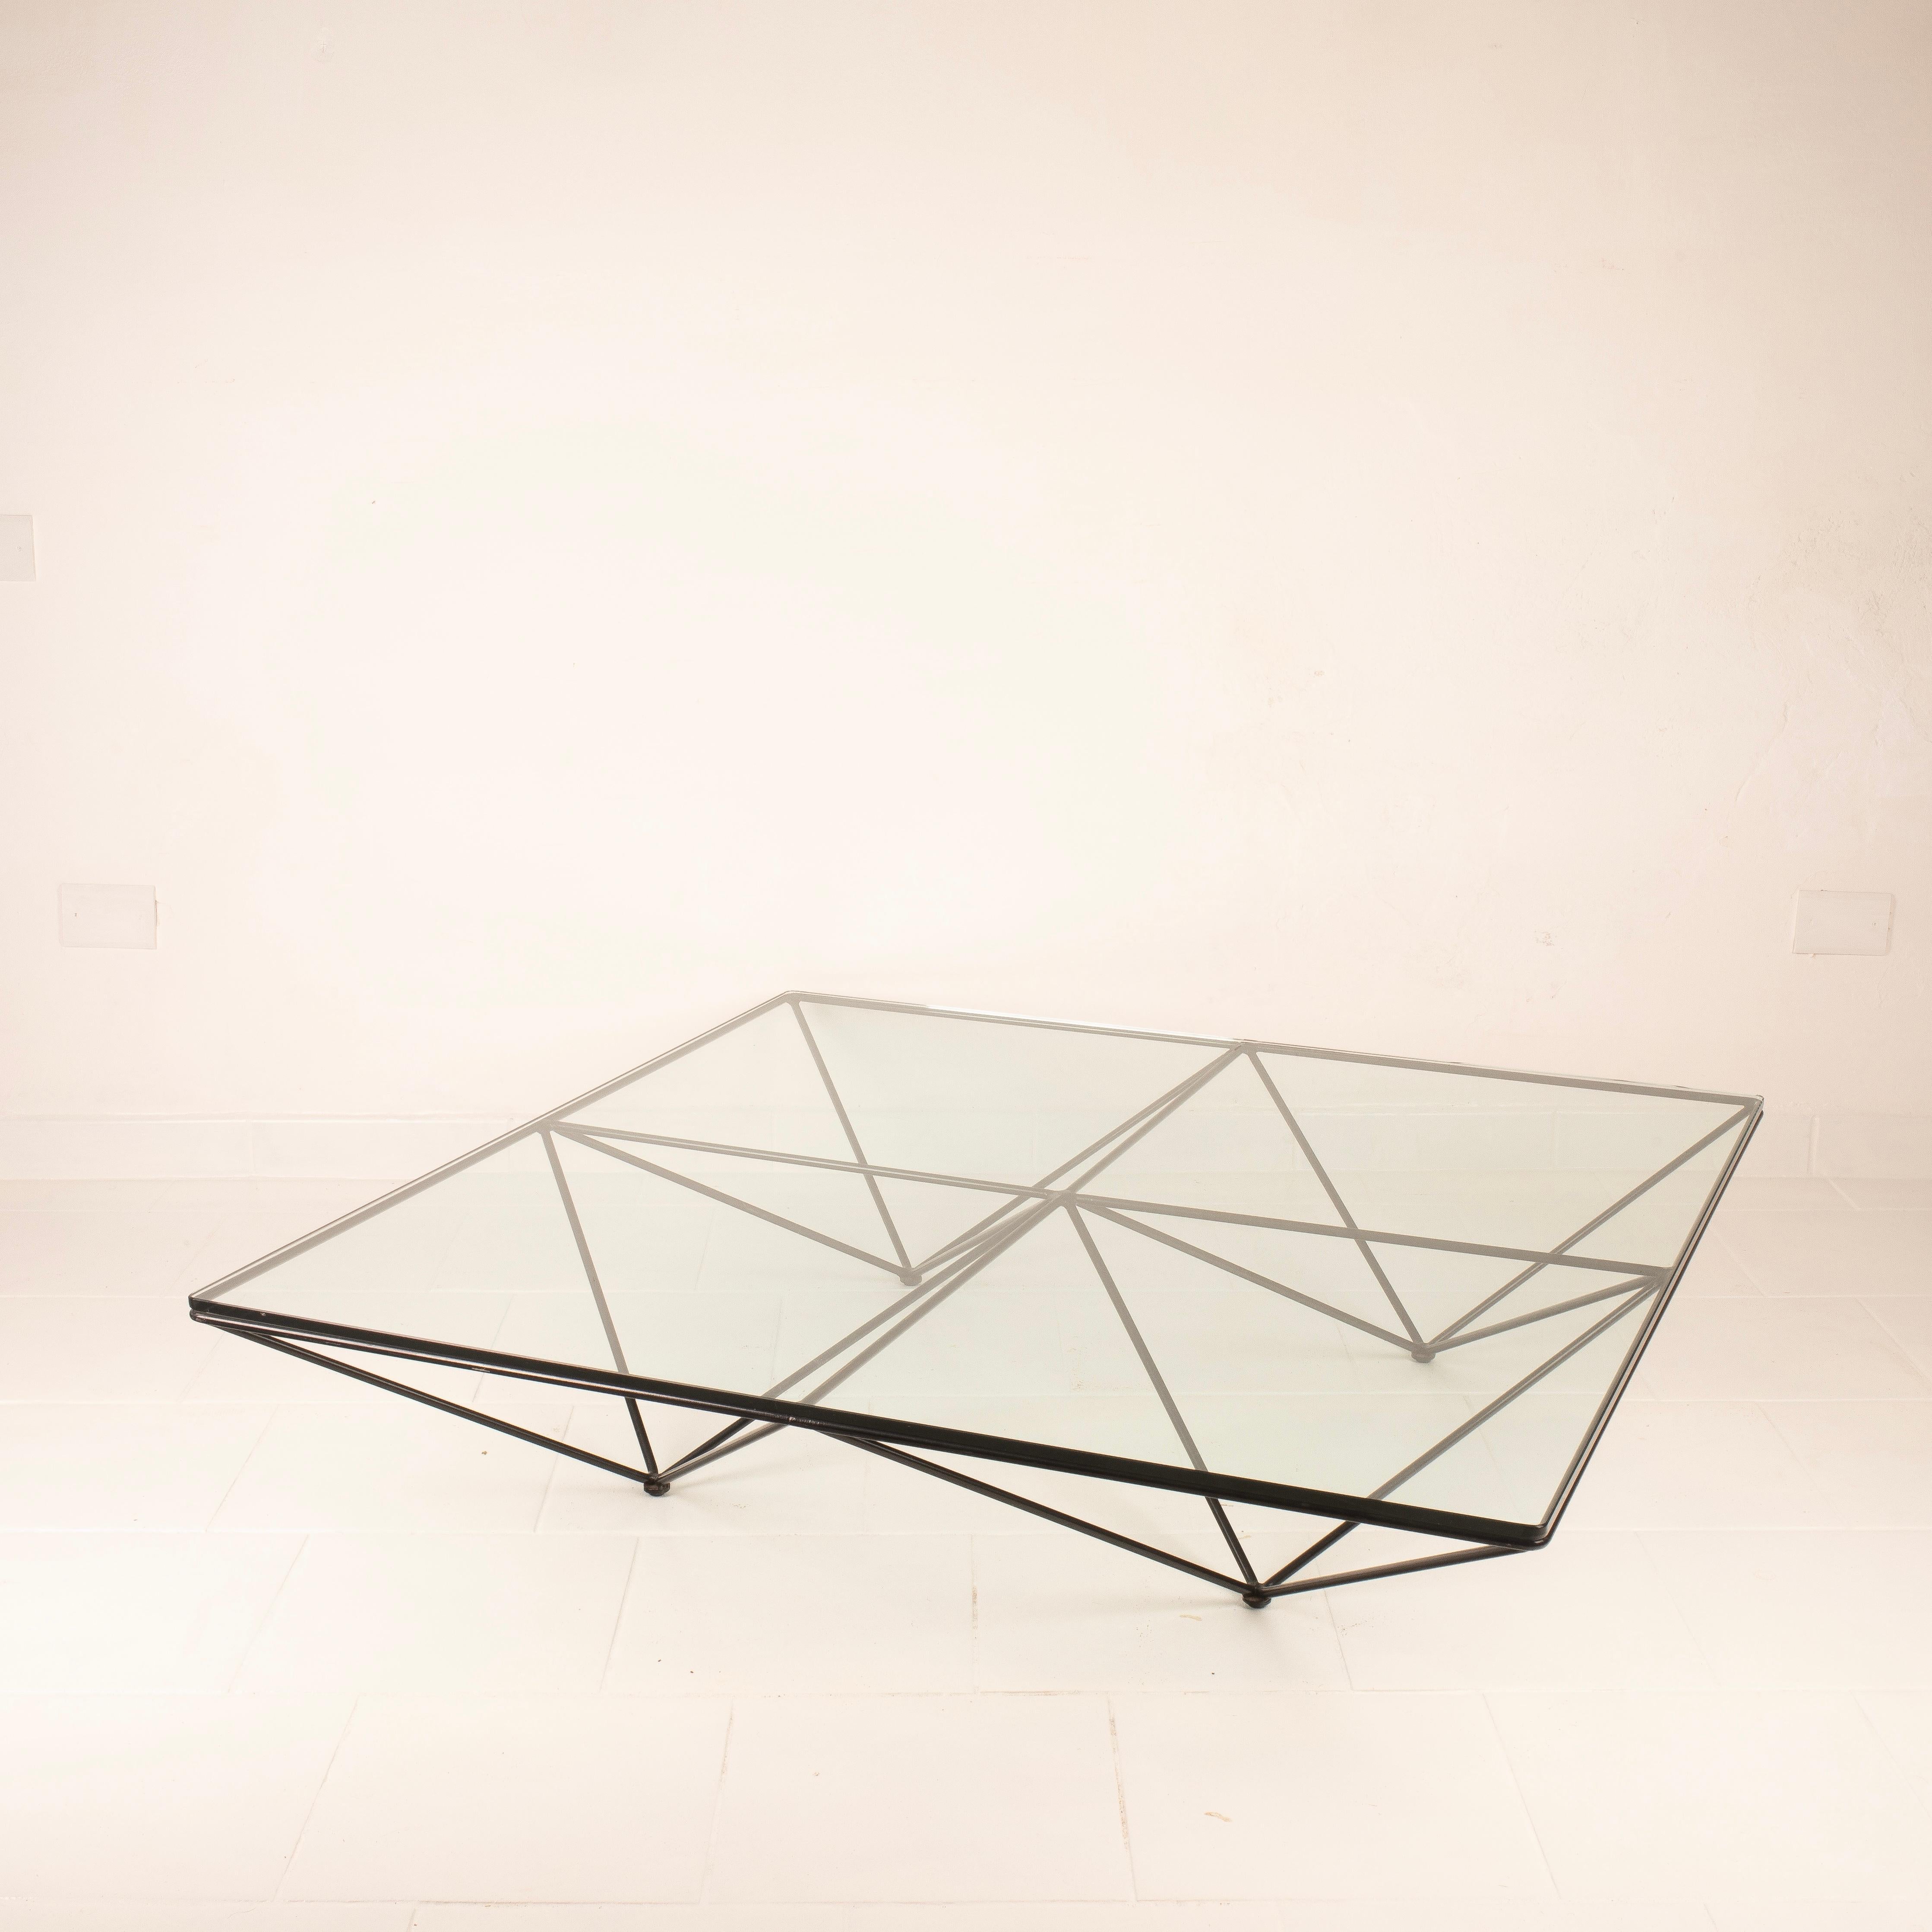 Il tavolino Alanda, progettato da Paolo Piva per B&B Italia negli anni '80 e rieditato nel 2018, è un'icona del design che cattura l'essenza dell'epoca. Questo straordinario tavolino si presenta in condizioni impeccabili, quasi come nuovo,